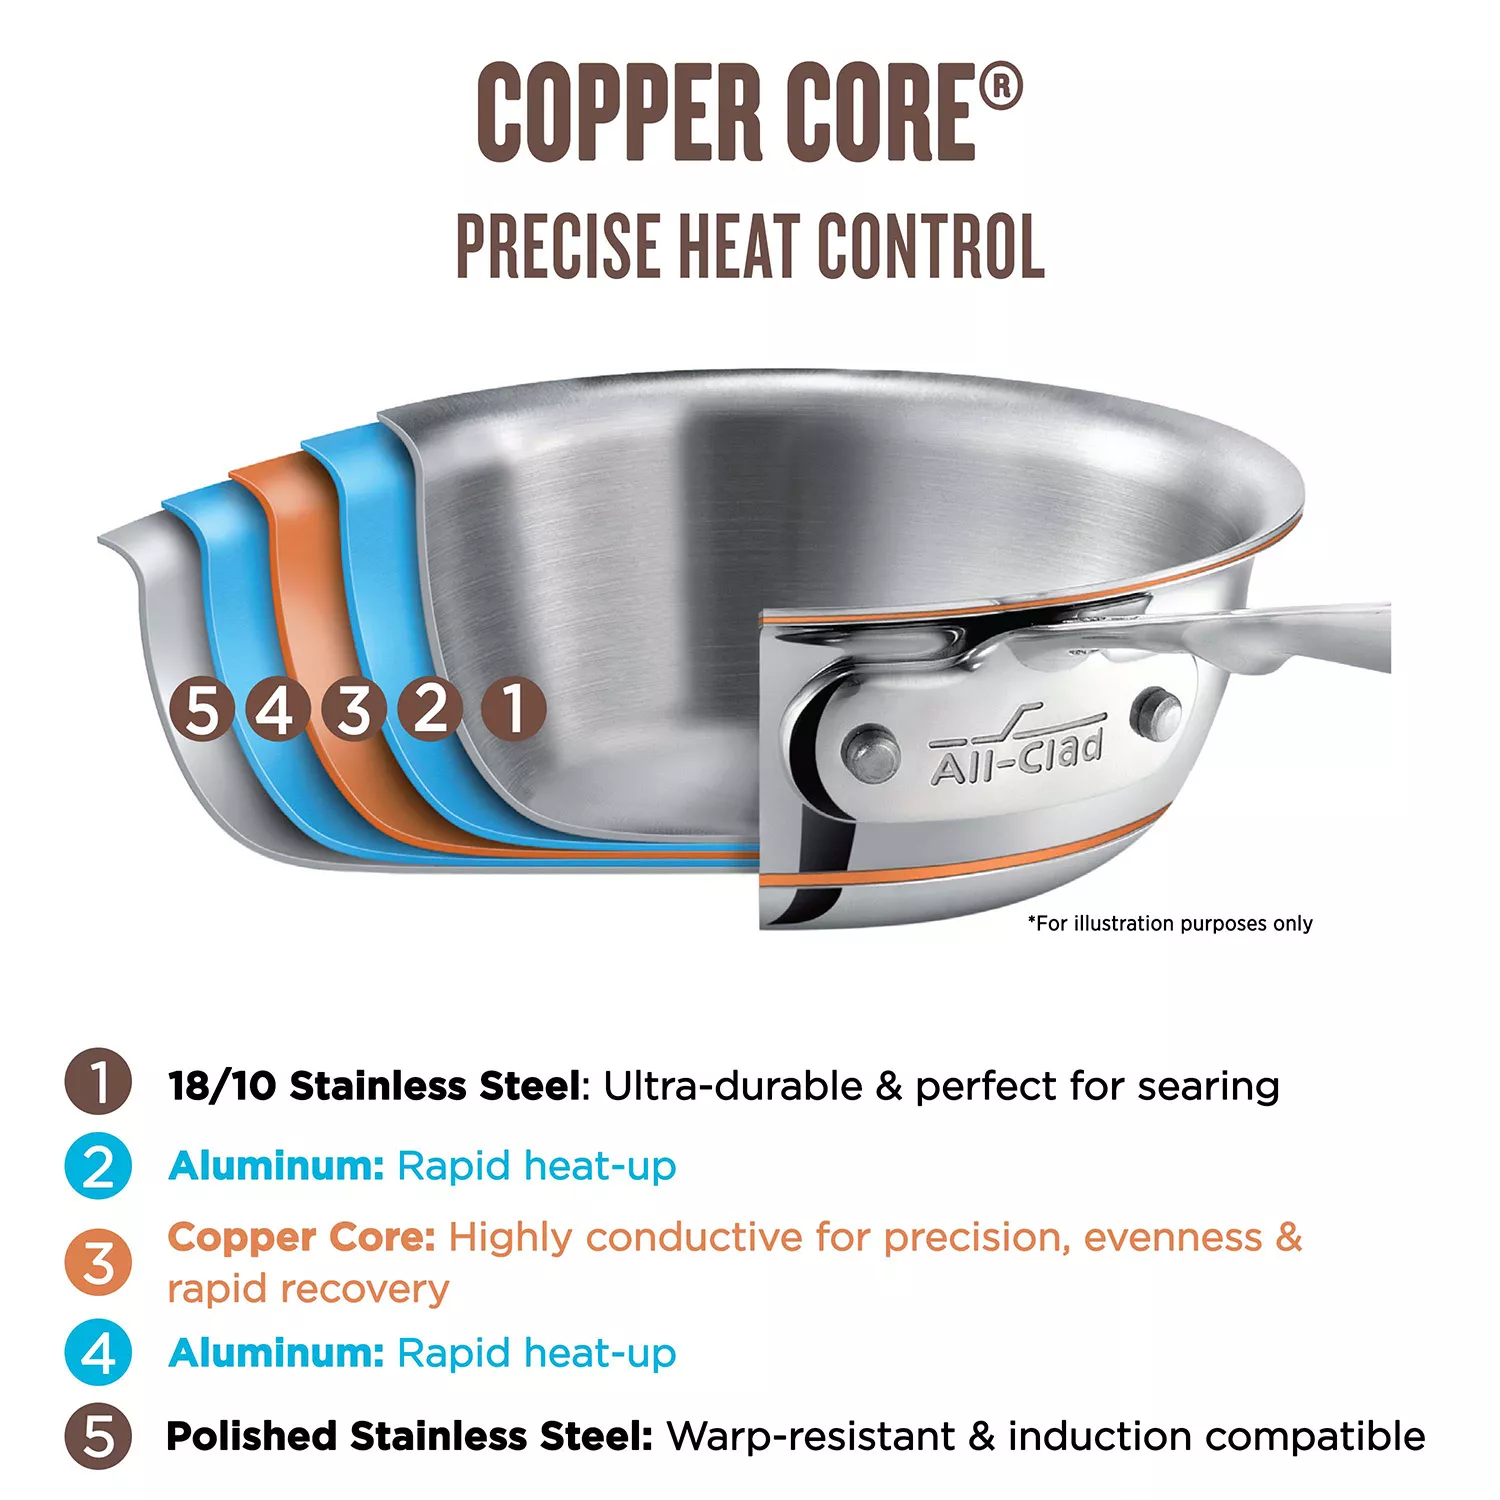 All-Clad Copper Core Saucier Pans